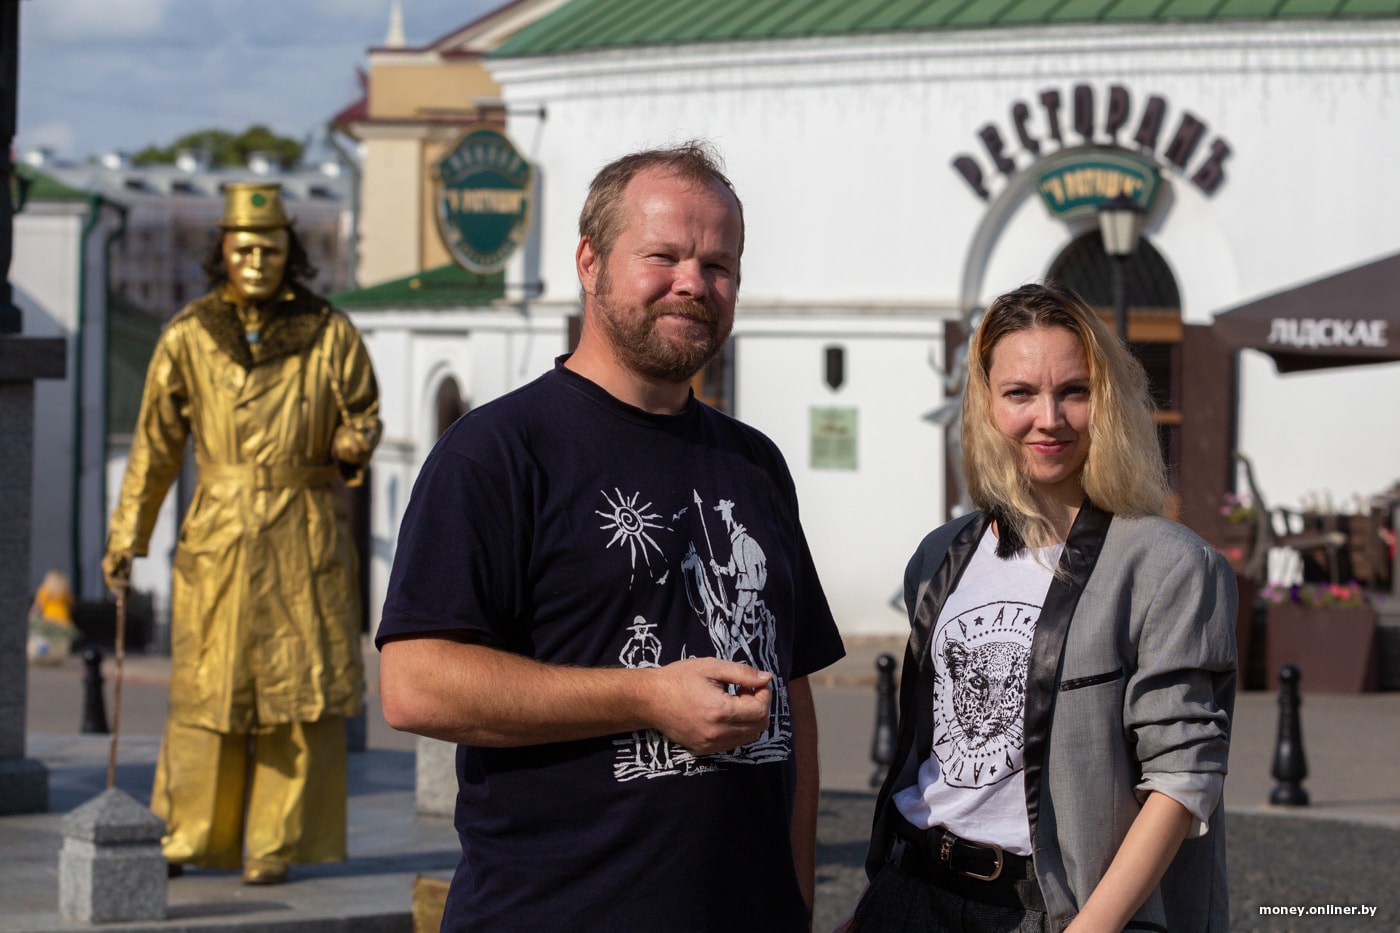 Сколько зарабатывают живые статуи в Минске? Испытано на себе